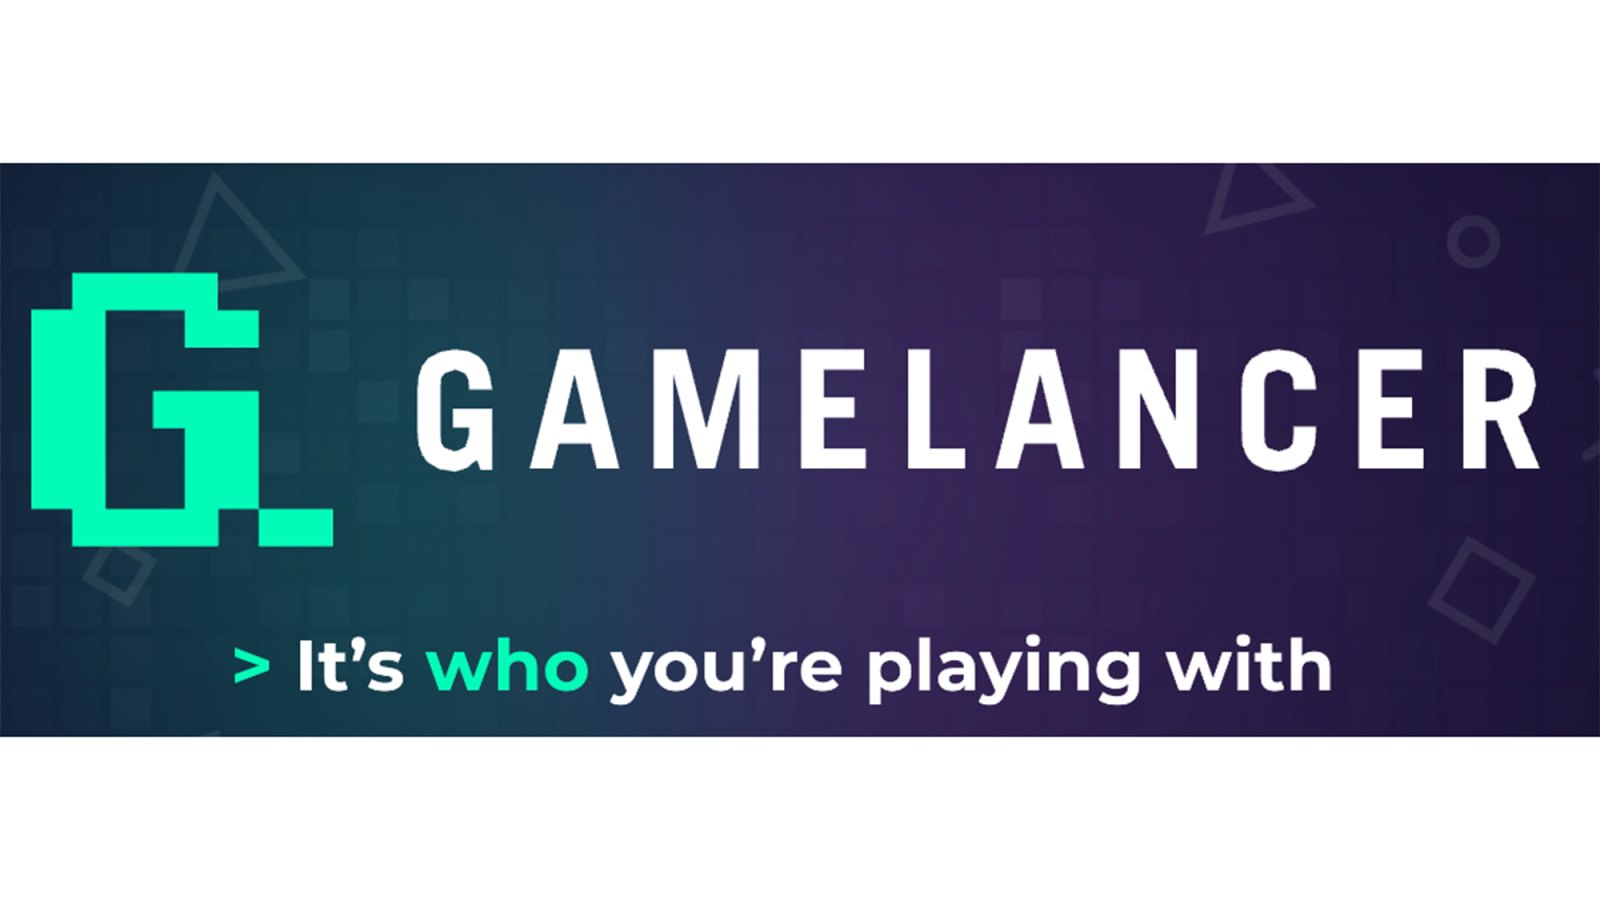 Gamelancer